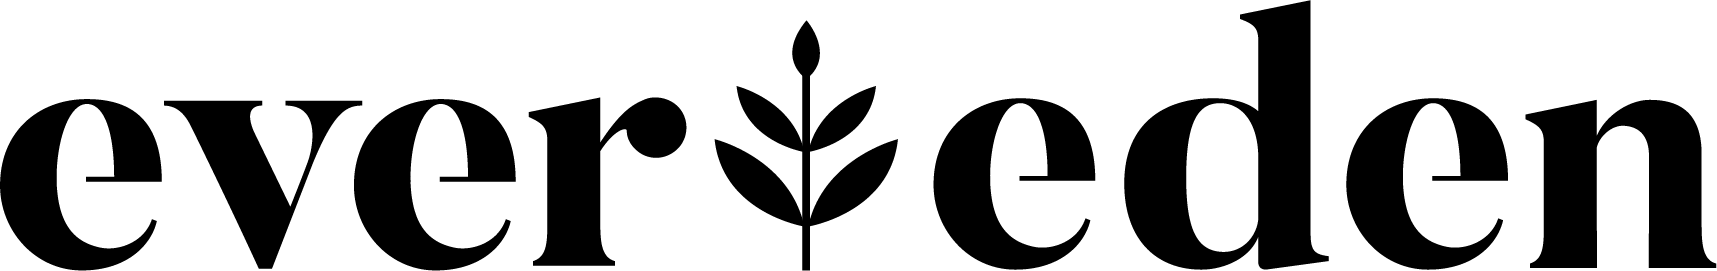 Evereden-Logo-Black.png